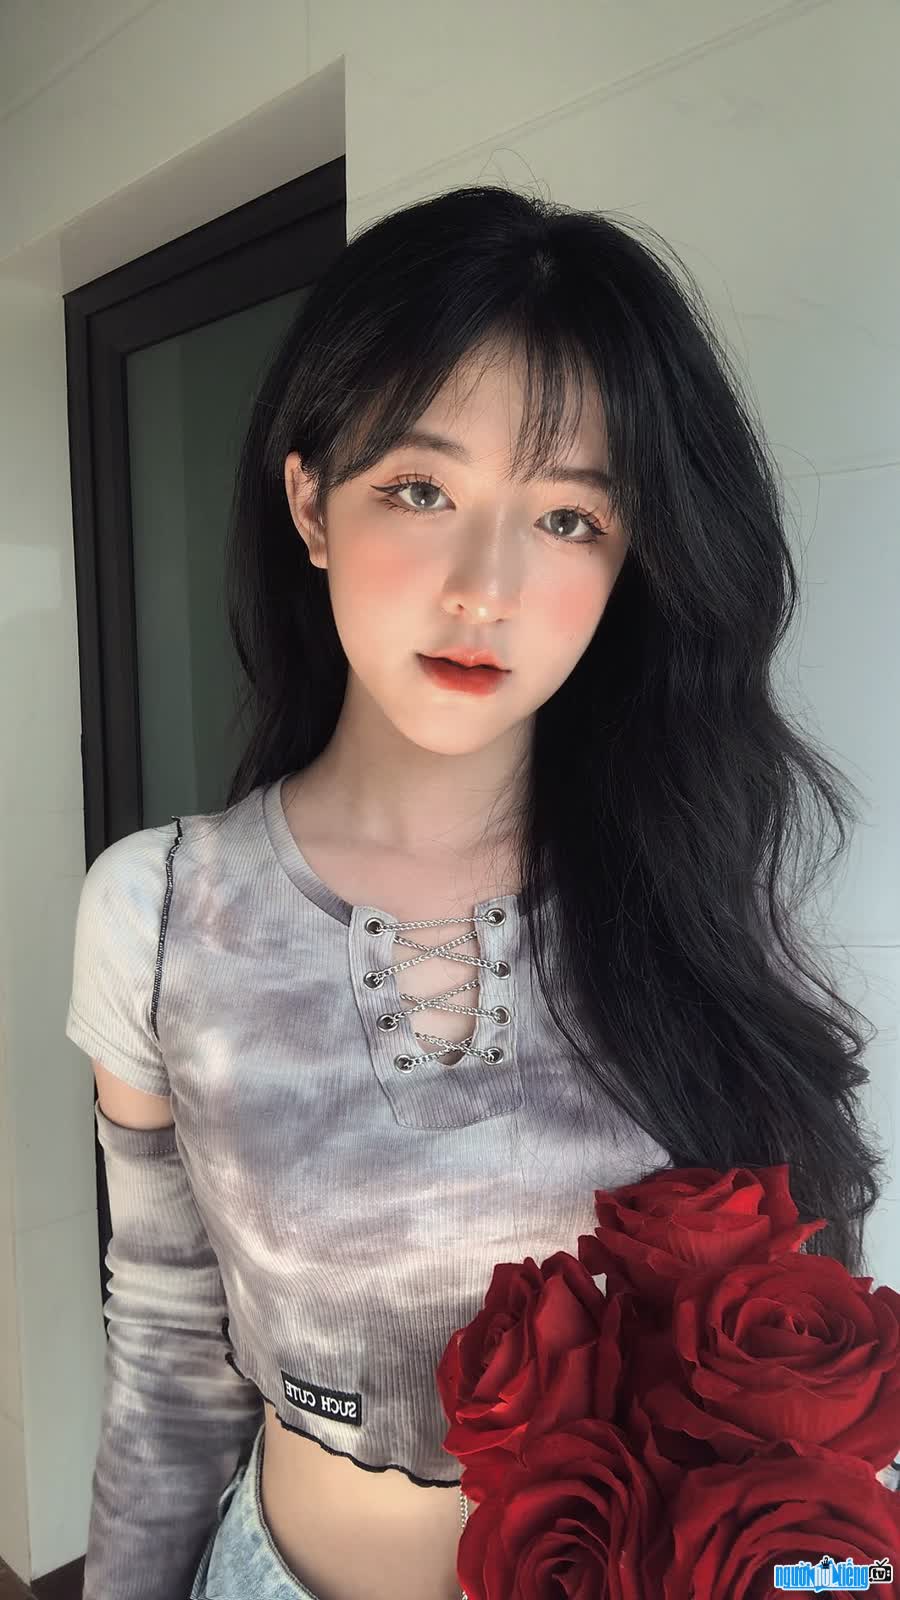 Thu Huong owns a beautiful doll-like beauty